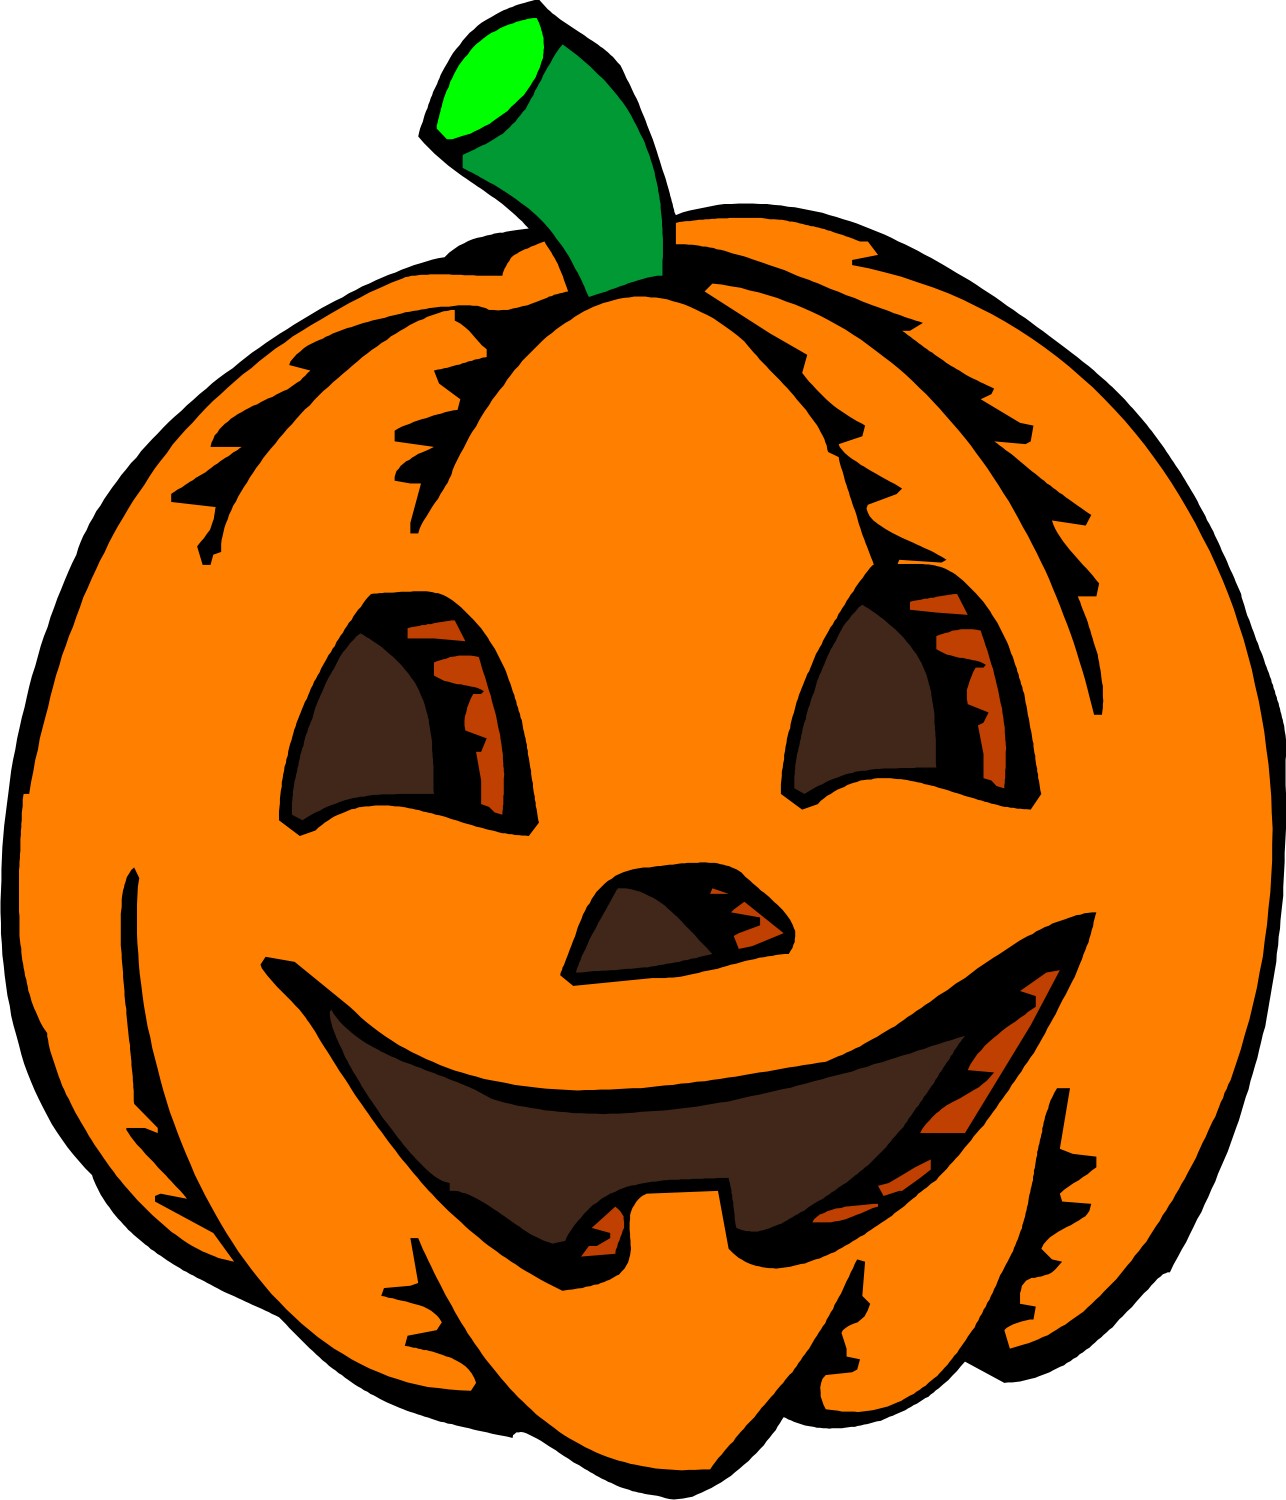 Pumpkin Cartoon clipart - Pumpkin Vegetable clip art ...